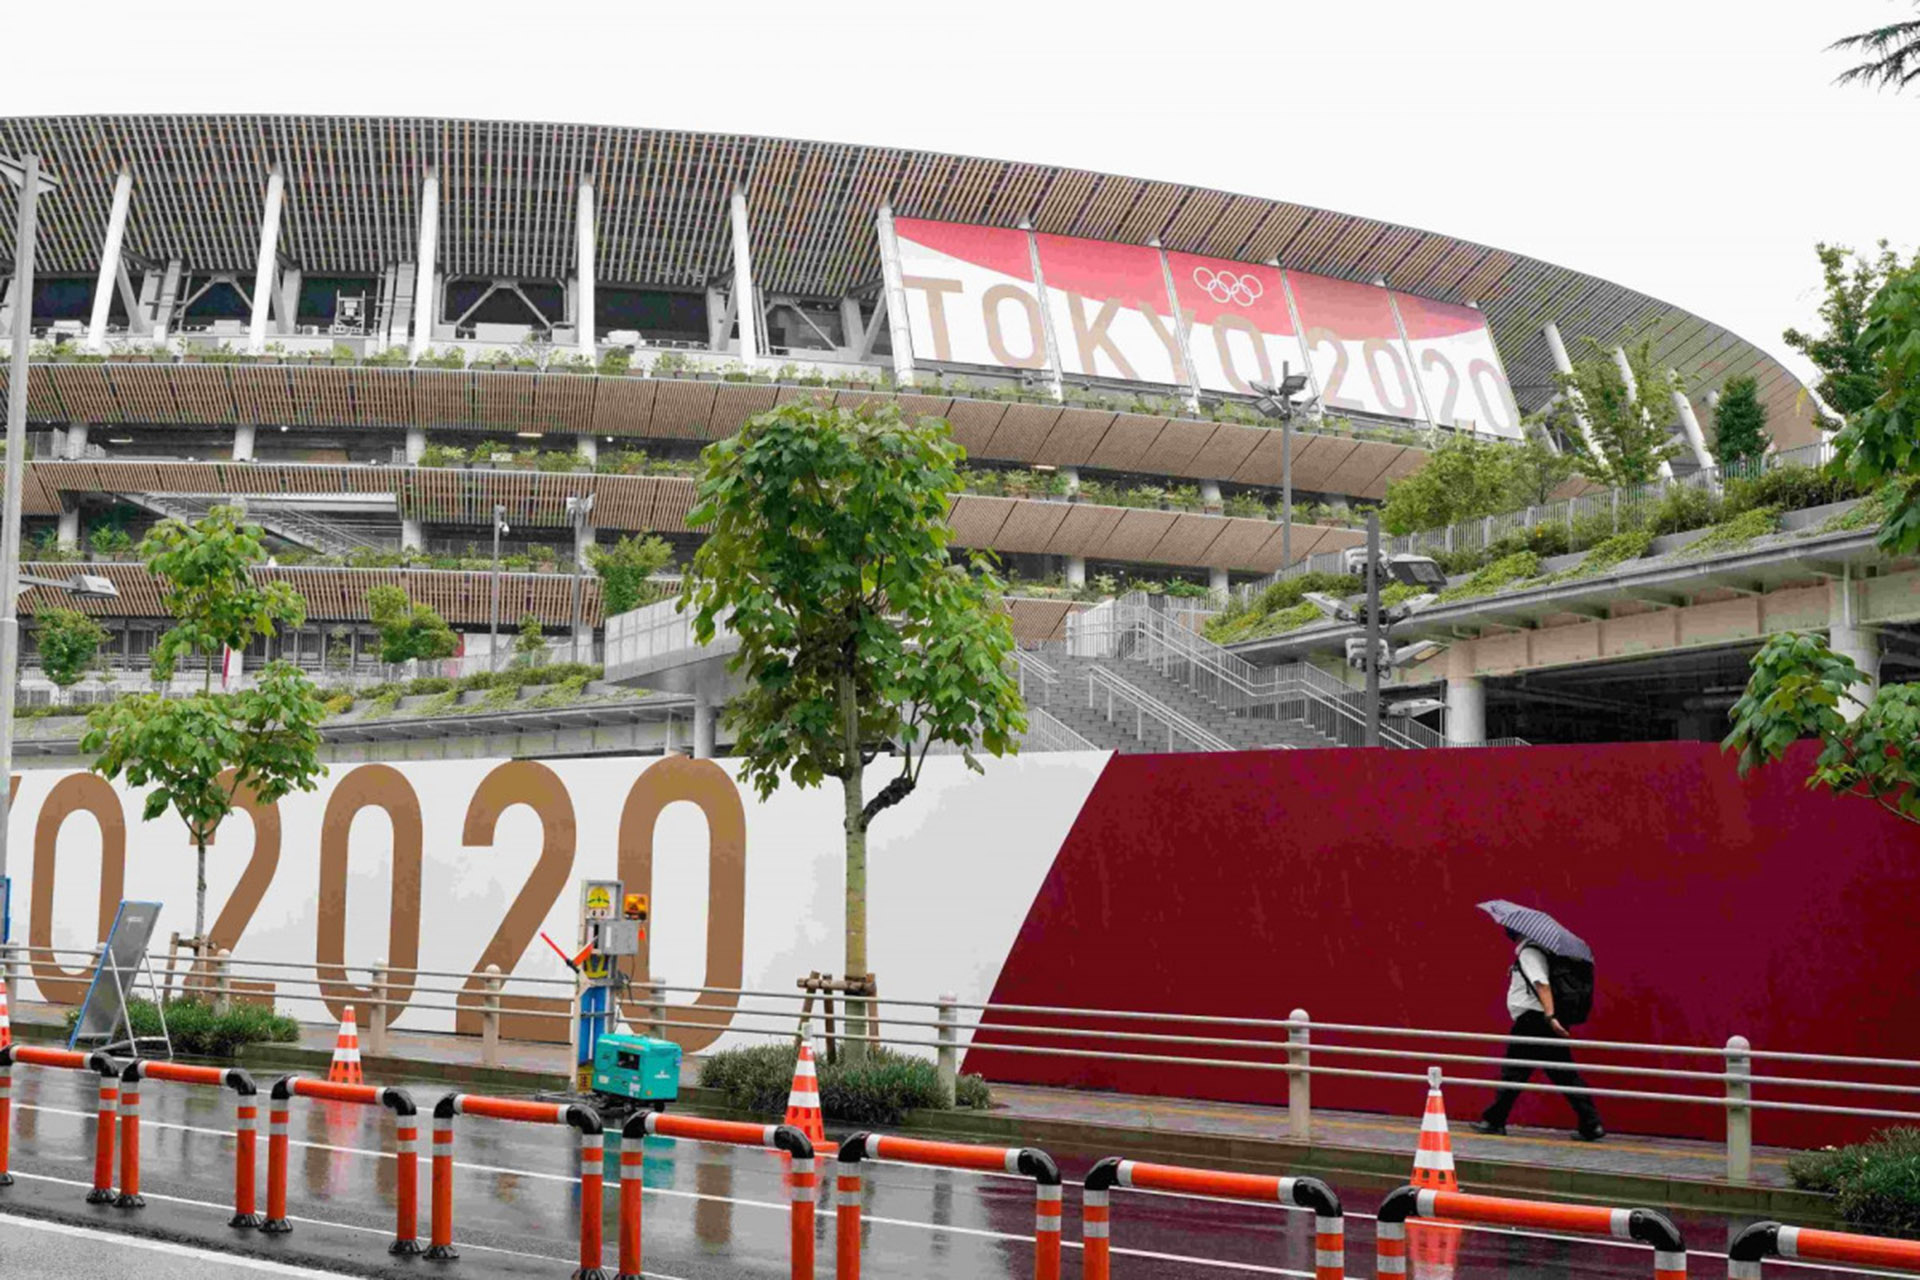 Sân vận động Tokyo, Nhật Bản. (Ảnh: Getty)